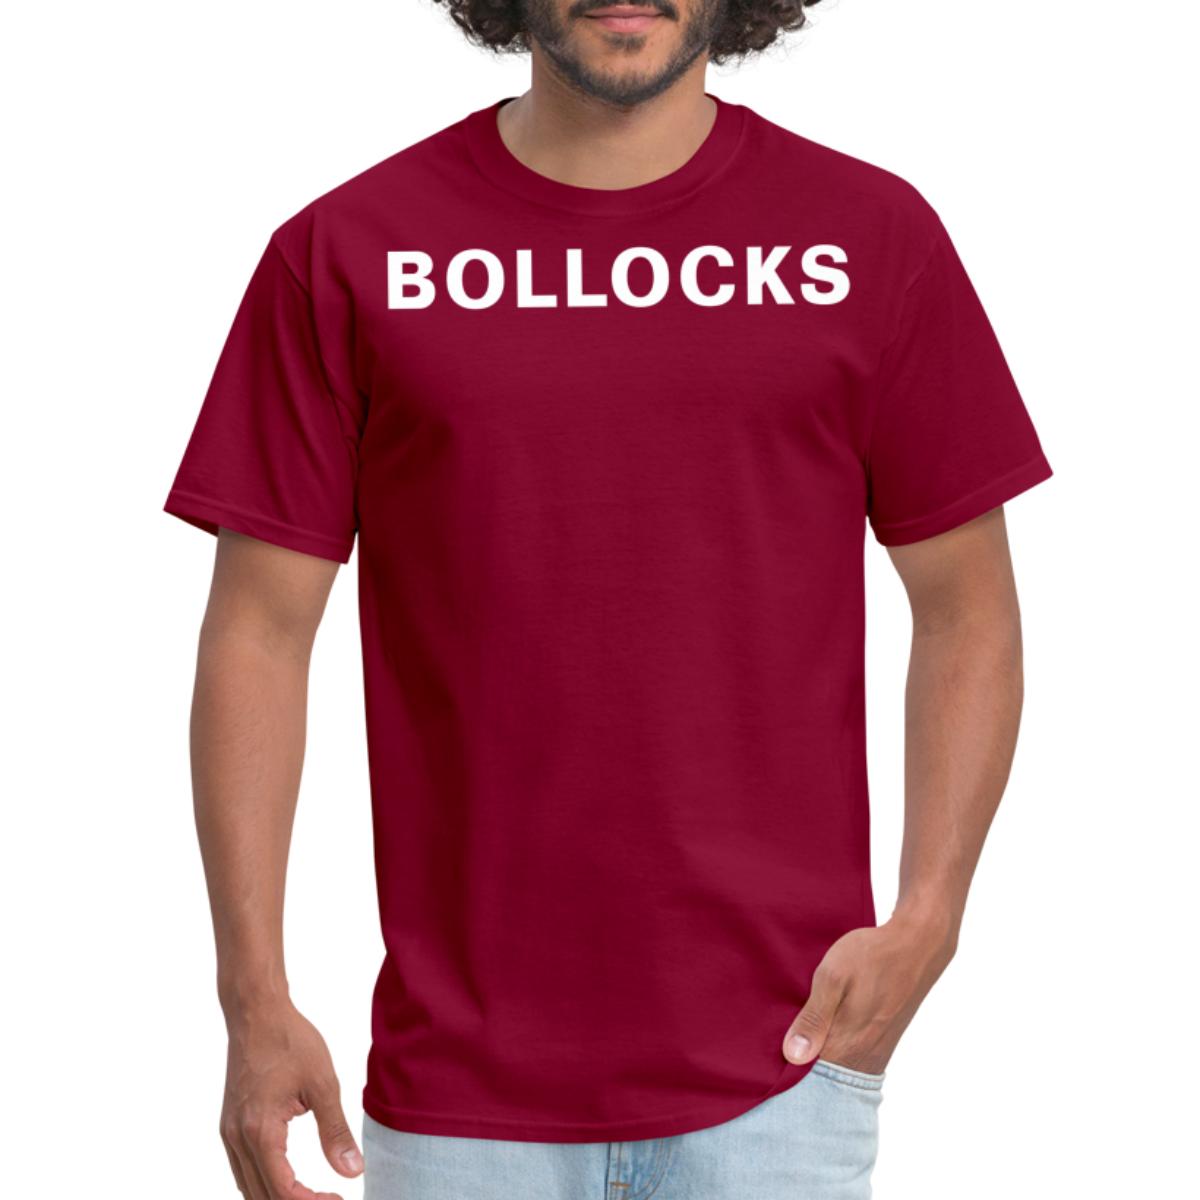 Bollocks Funny Slang Phrase Trending Unisex Men's Classic T-Shirt ...